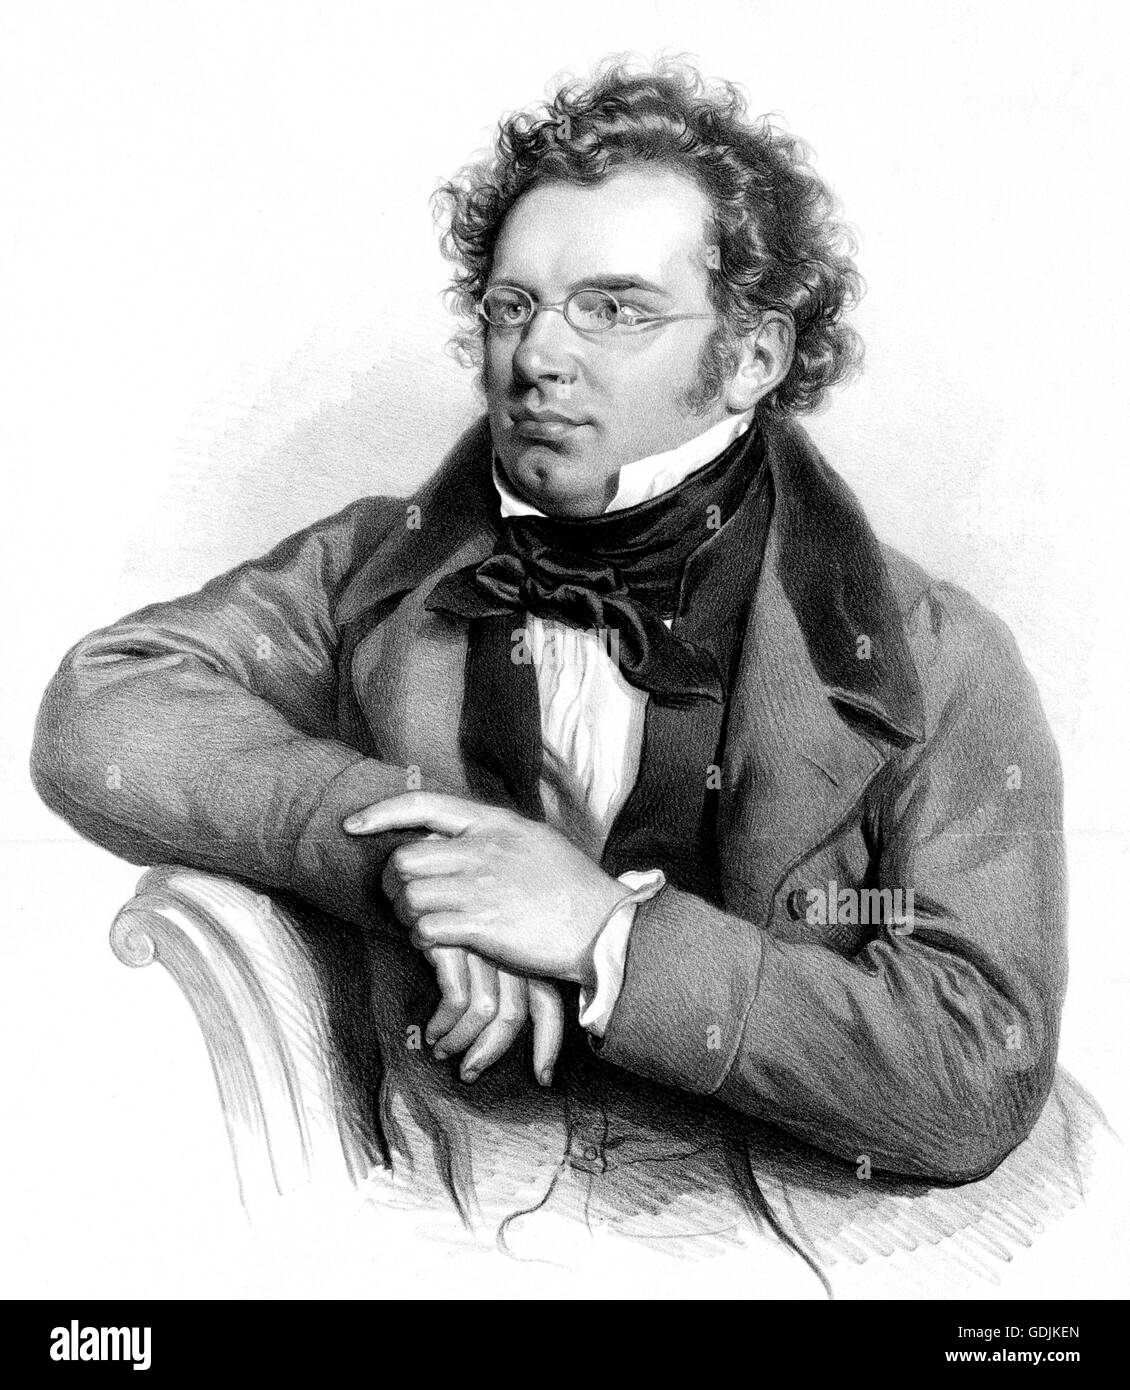 Franz Schubert. Portrait of the Austrian composer, Franz Peter Schubert (1797-1828). Lithograph by Josef Kriehuber, 1846 Stock Photo